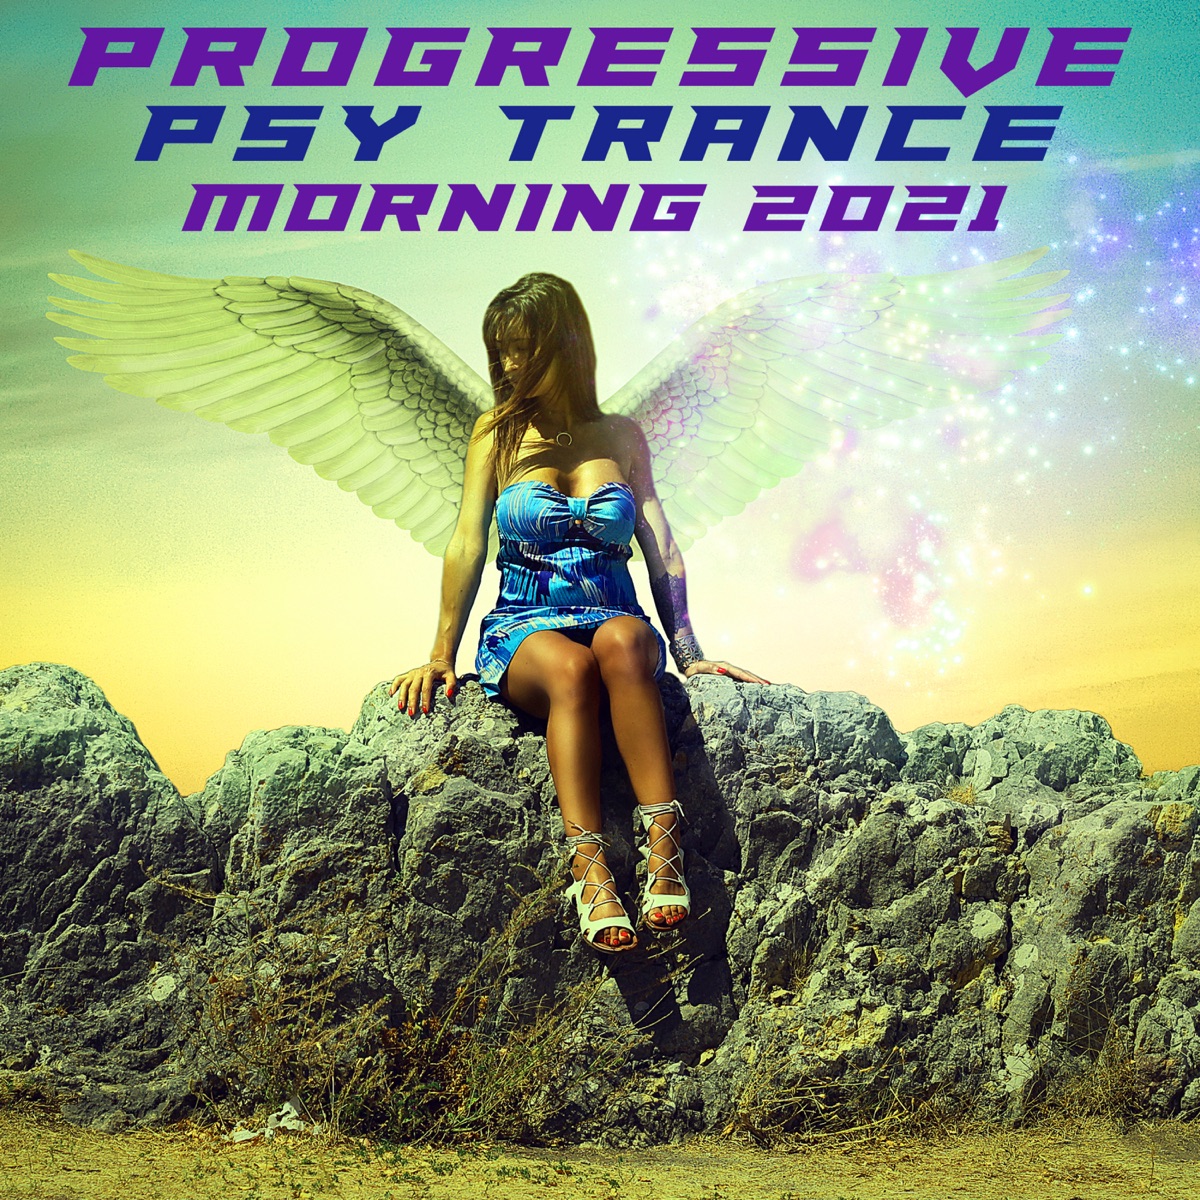 Villig bodsøvelser Bliv Progressive Psytrance Morning 2021 by Various Artists on Apple Music